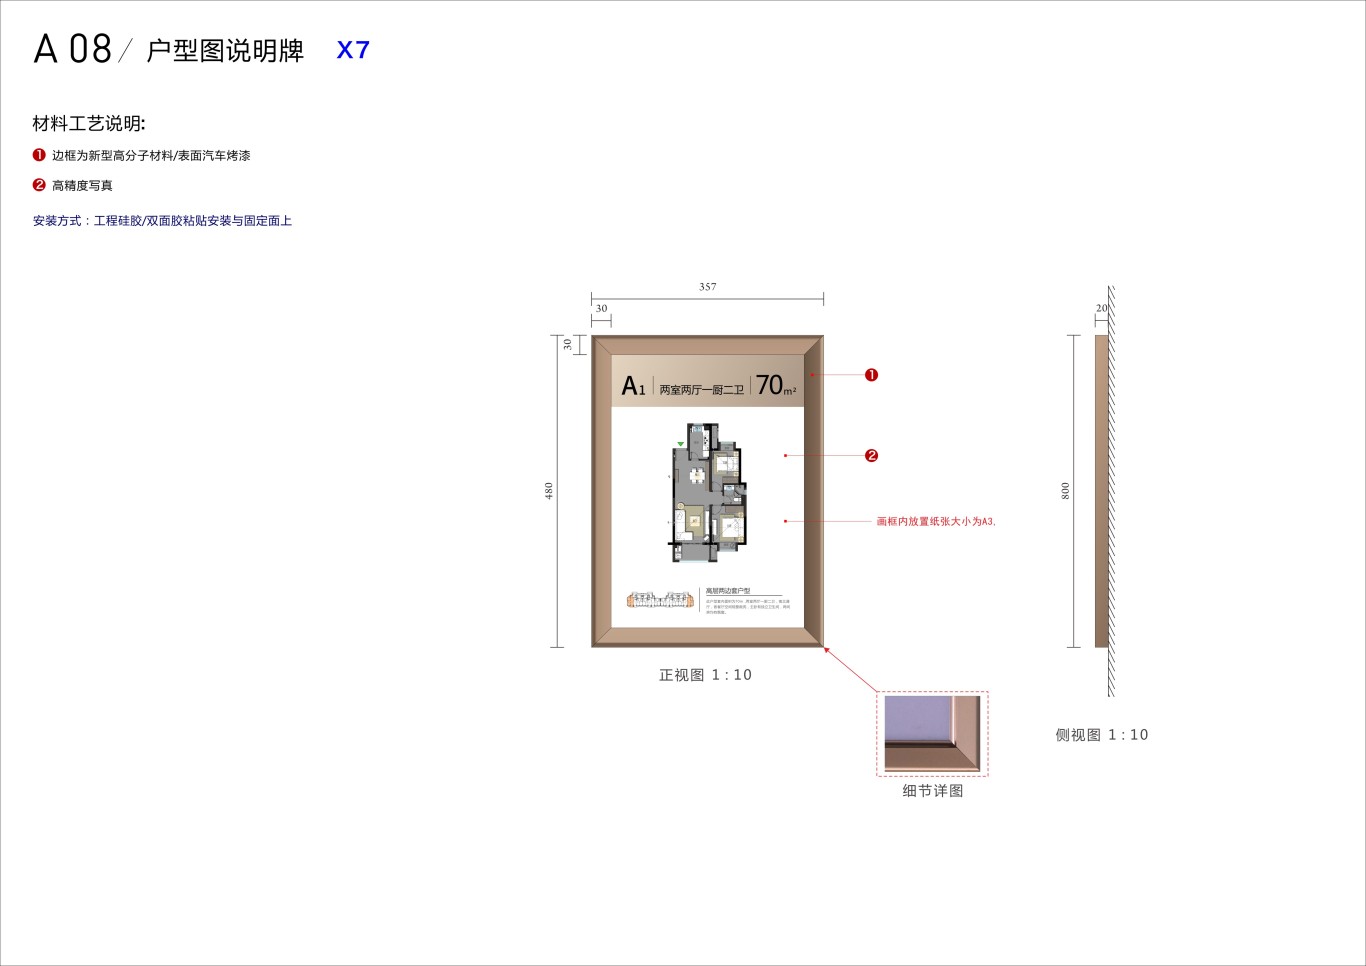 上海嘉宝梦之晴华庭房地产标识系统设计图4